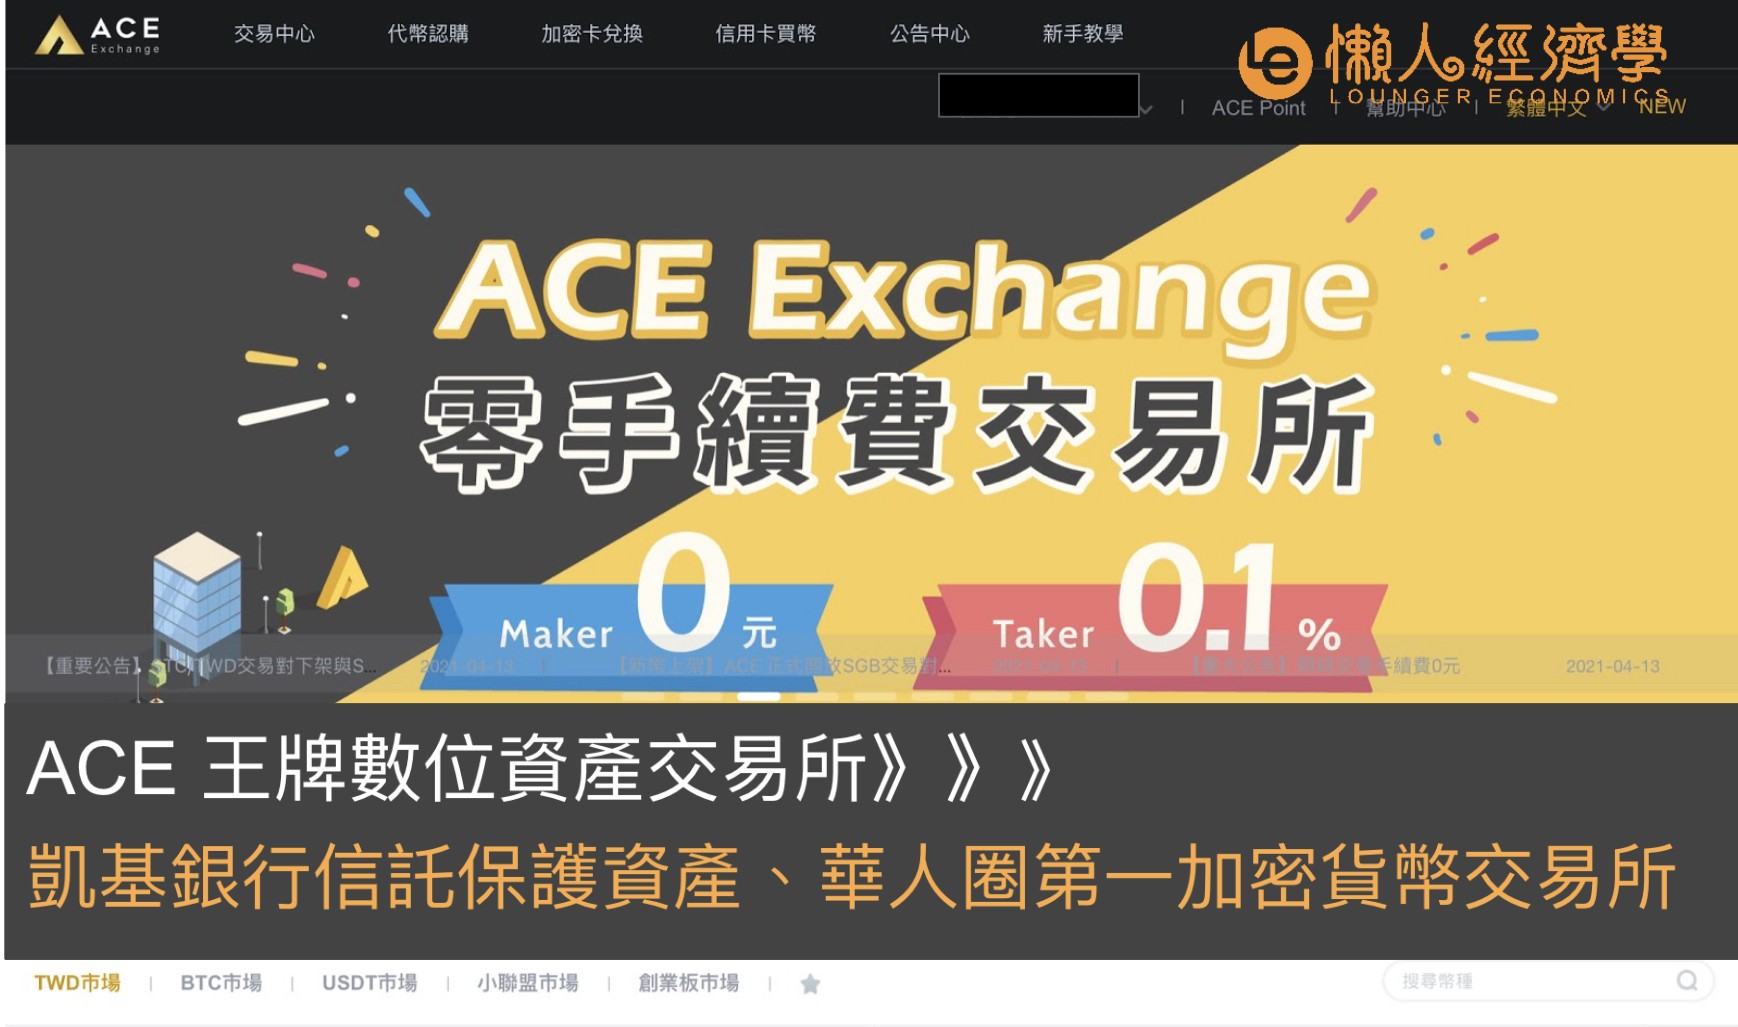 ACE 王牌數位資產交易所：凱基銀行信託保護資產、華人圈第一加密貨幣交易所